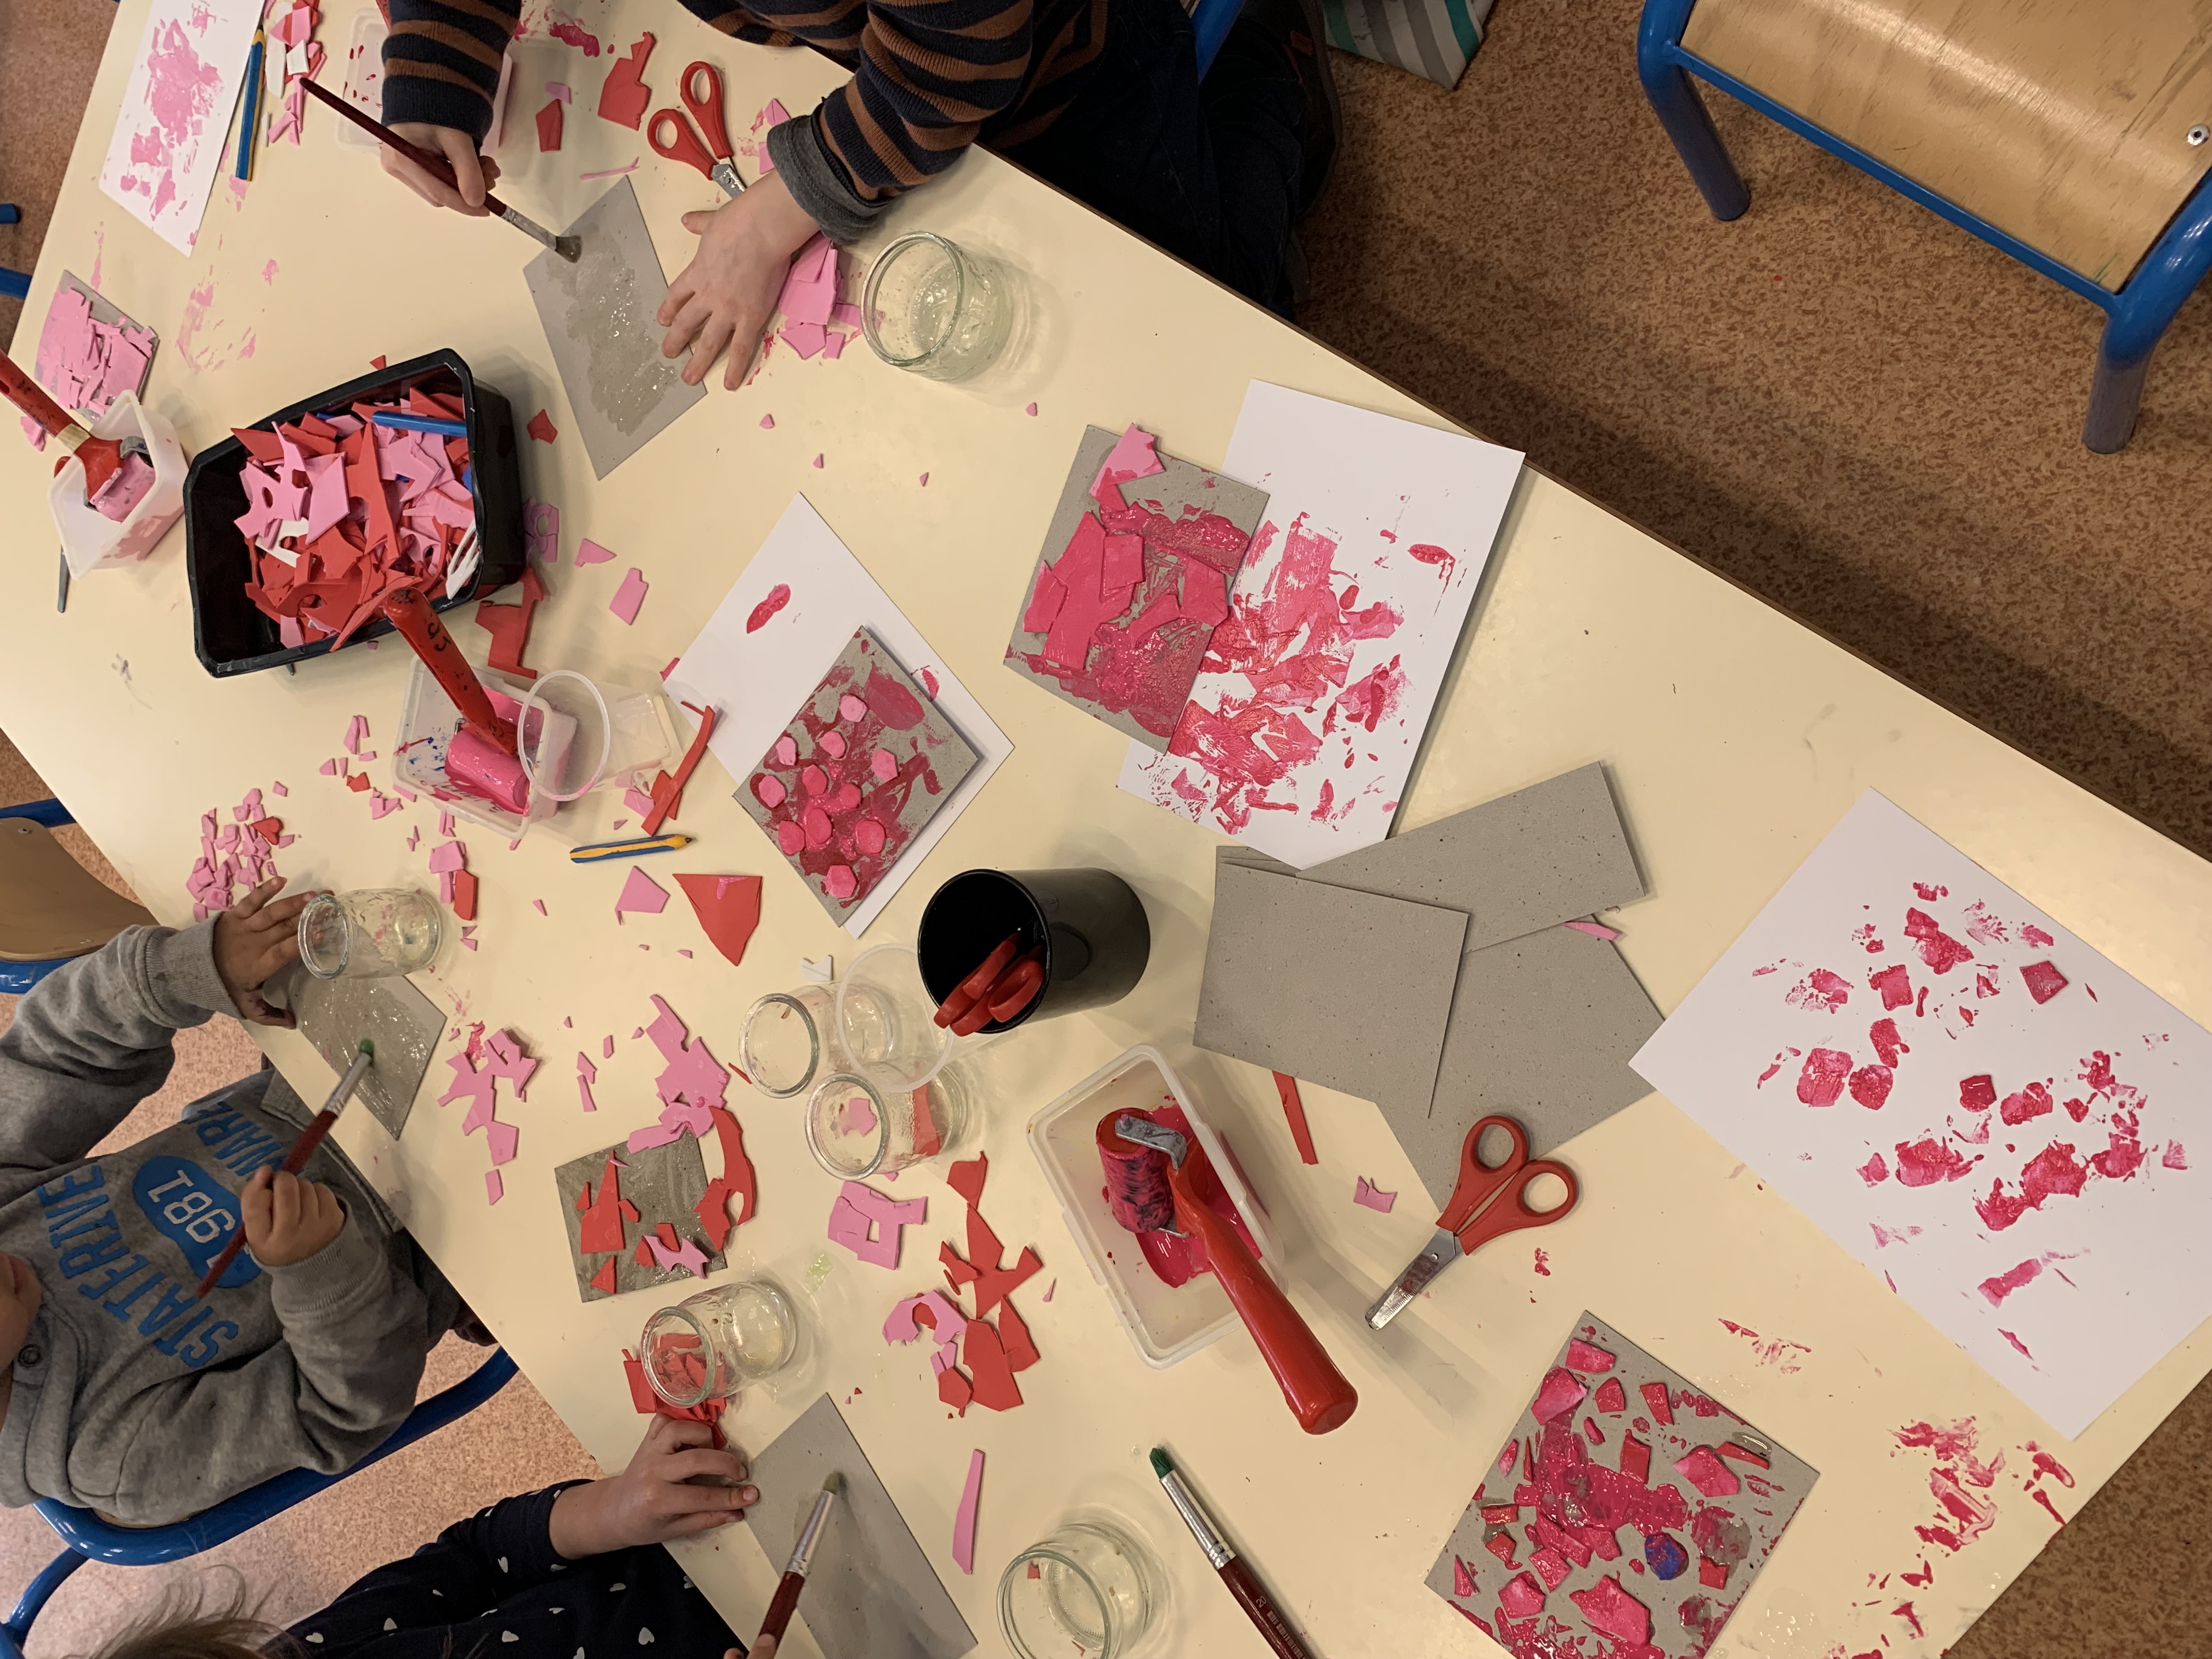 Gros plan sur une table couverte de peinture rose, de ciseaux, de feuilles de carton, de petits éléments en mousse et de pinceaux.